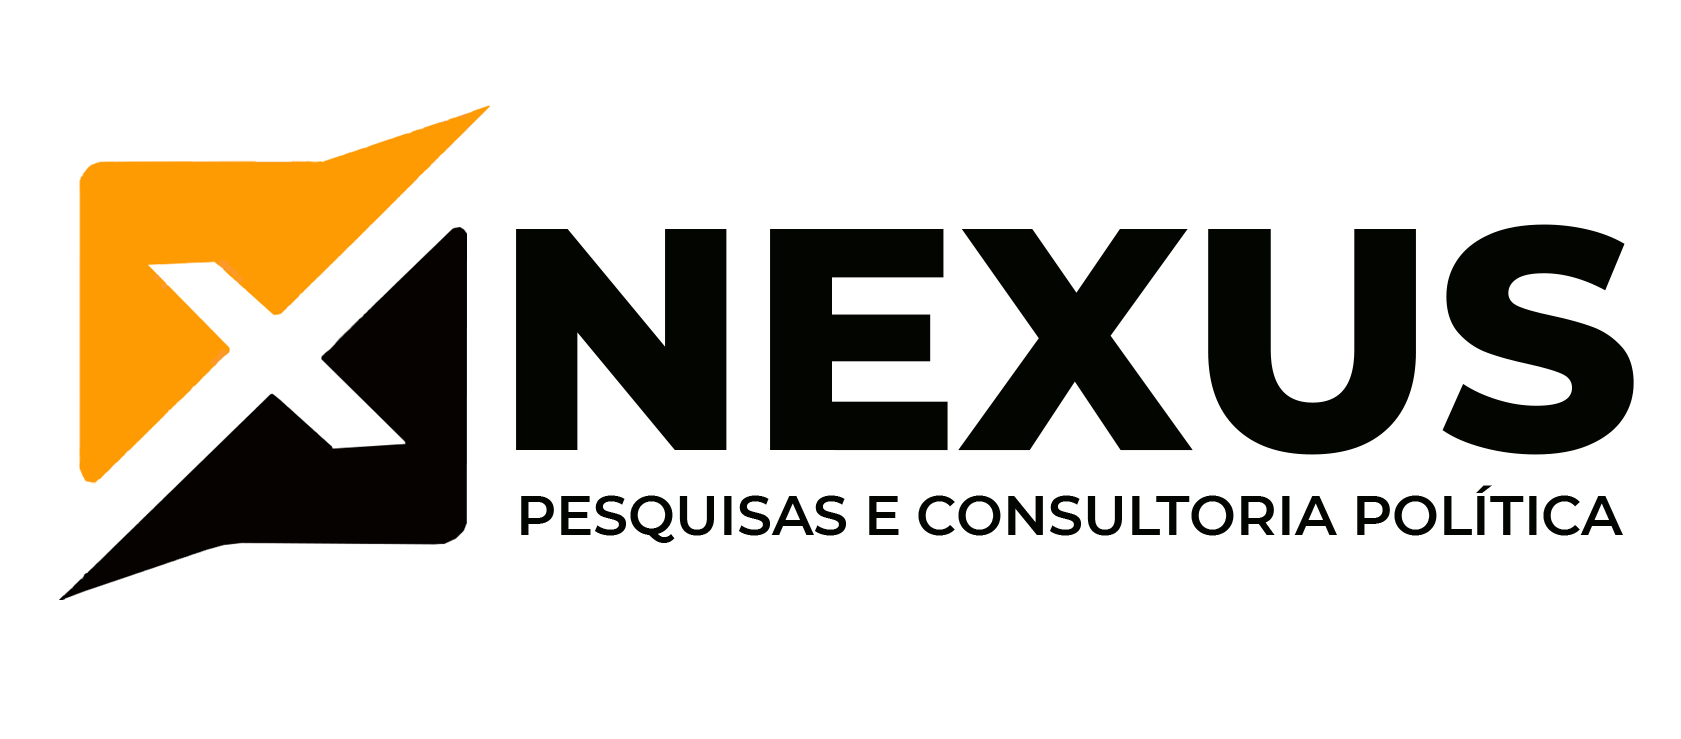 Nexus Consultoria